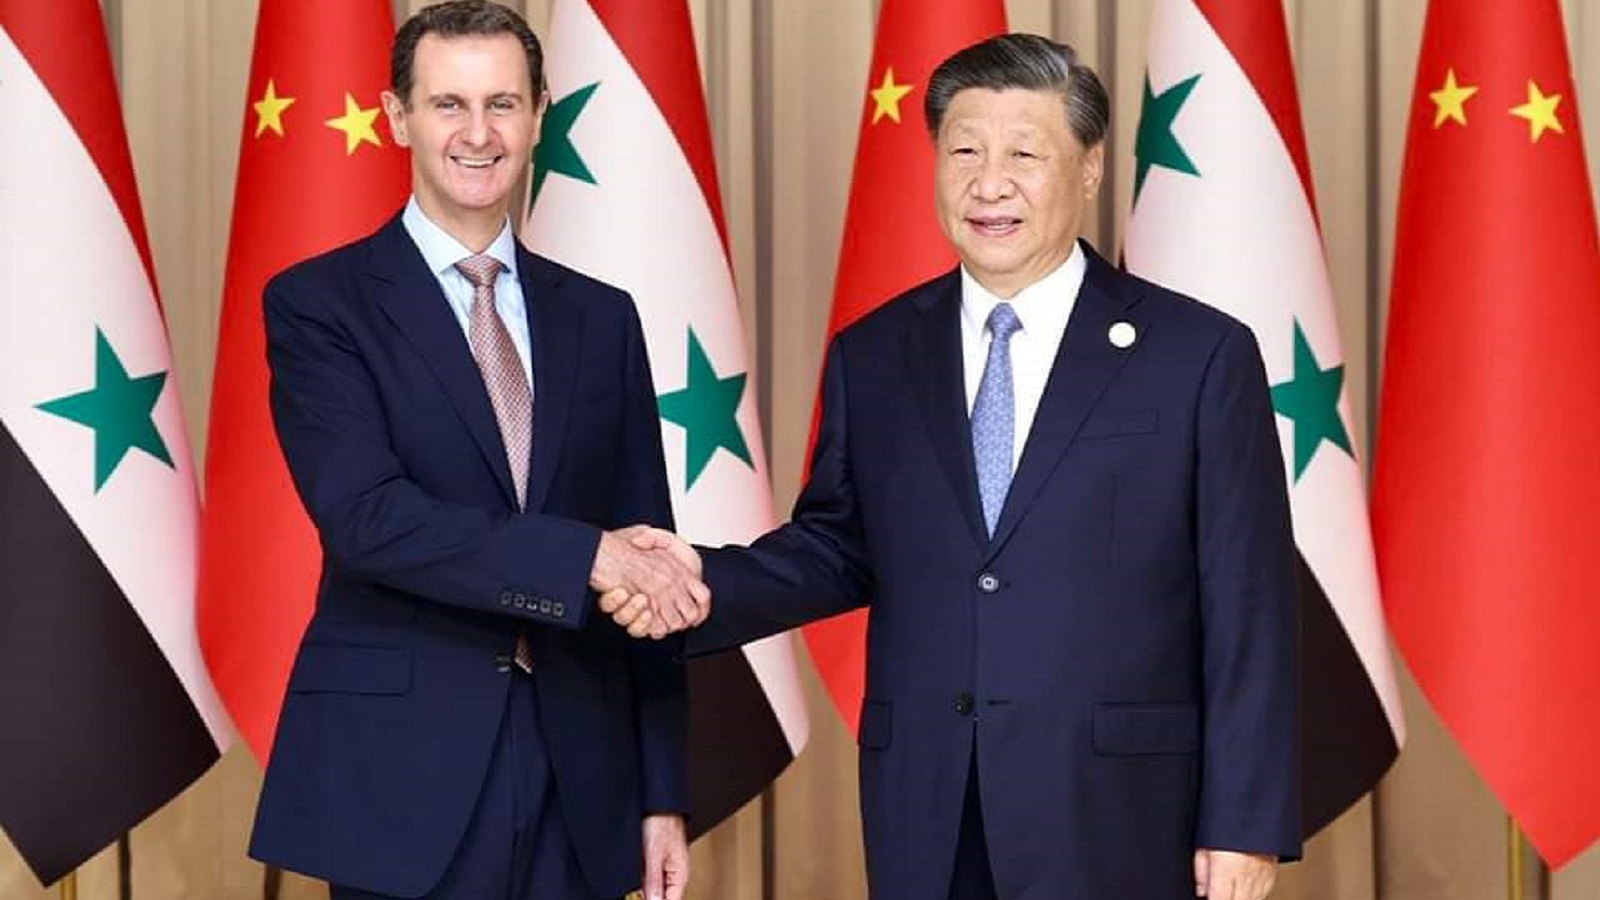 الرئيسان الصيني والسوري:إعلان شراكة استراتيجية بين البلدين 